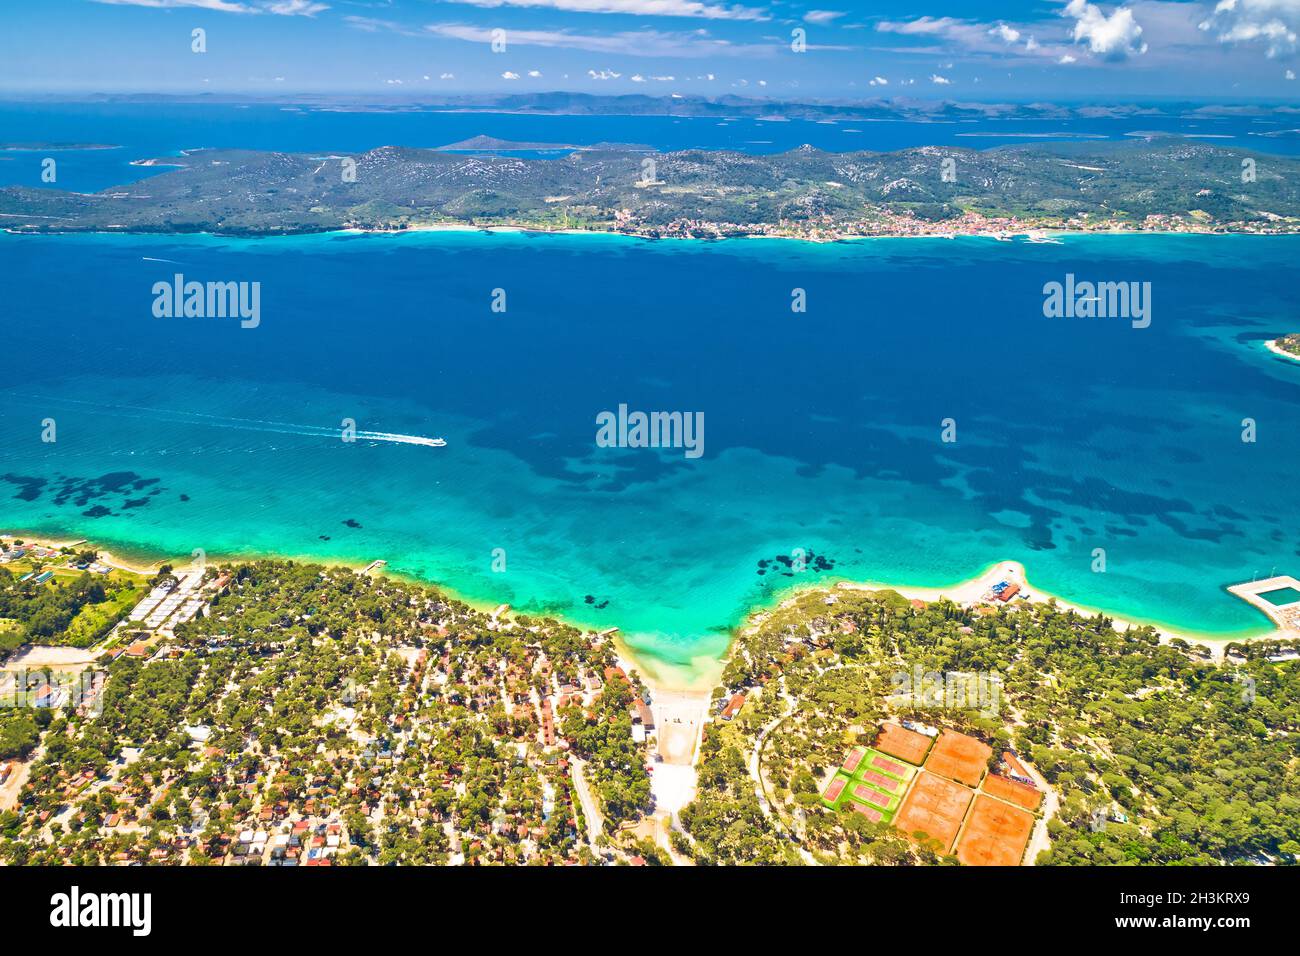 Biograd na Moru, plage turquoise idyllique et vue aérienne de l'île de Pasman, région de Dalmatie en Croatie Banque D'Images